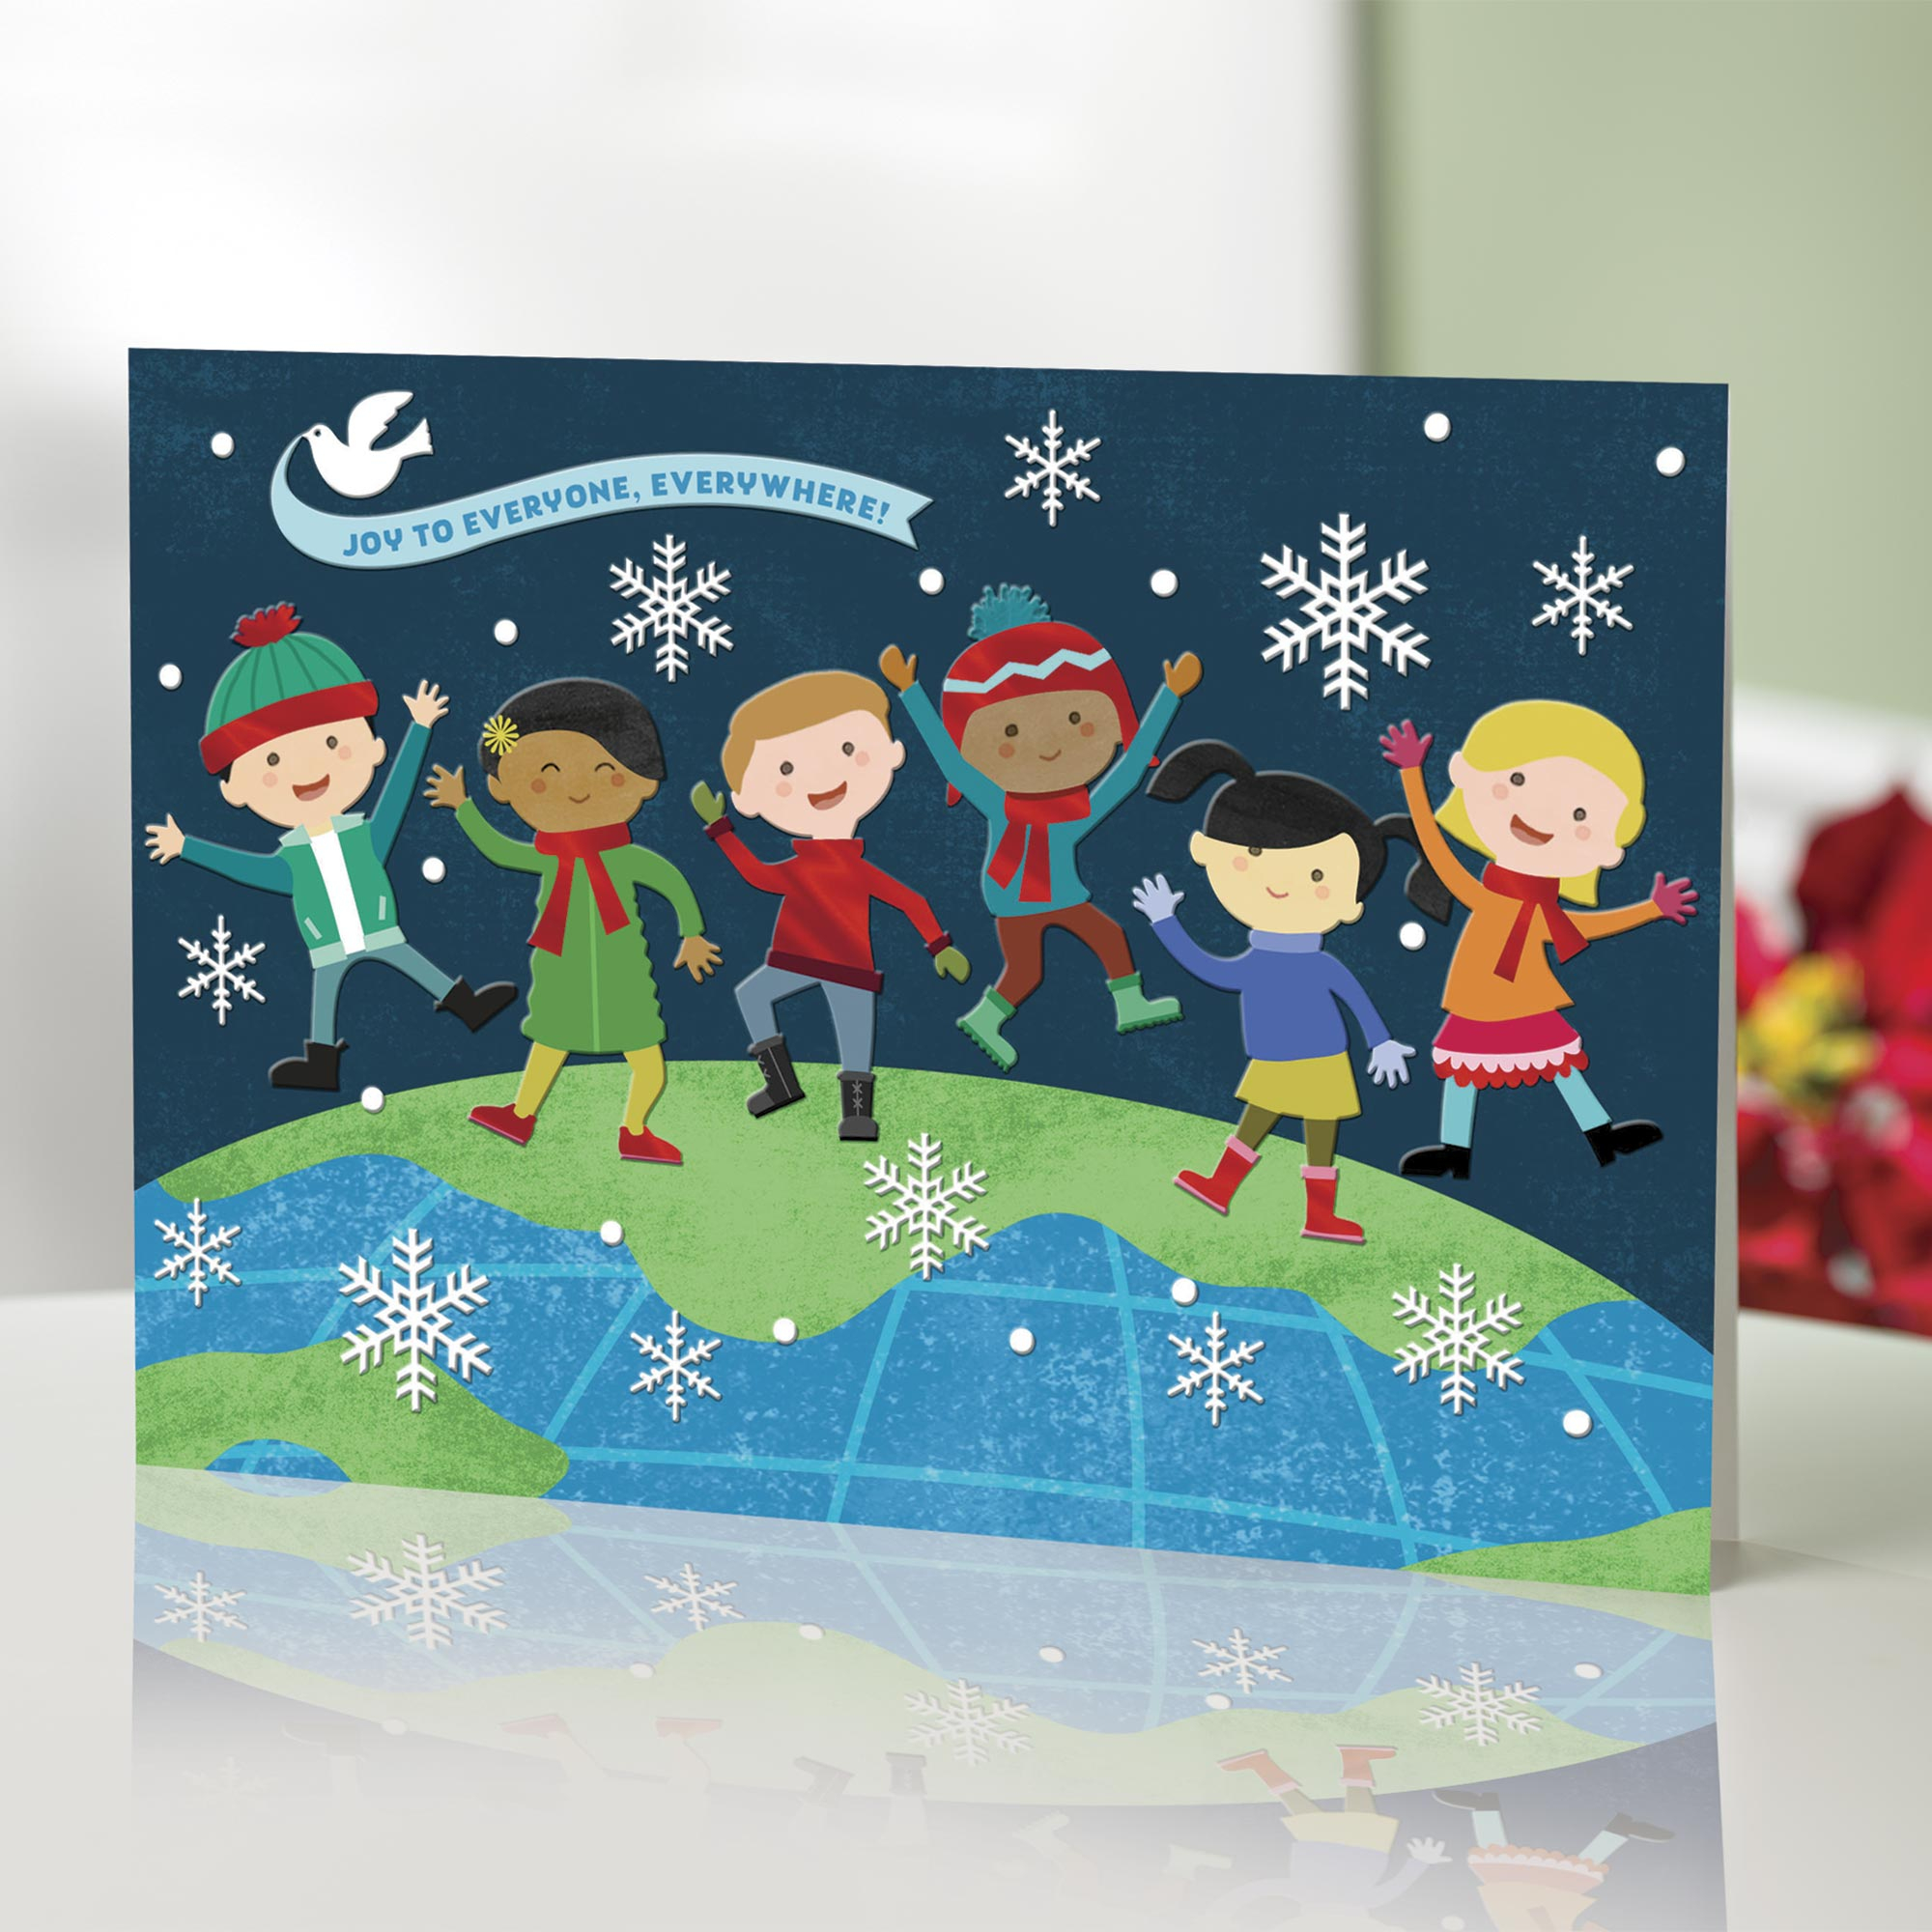 UNICEF Market UNICEF Holiday Cards with Joyful Kids (set of 16) On